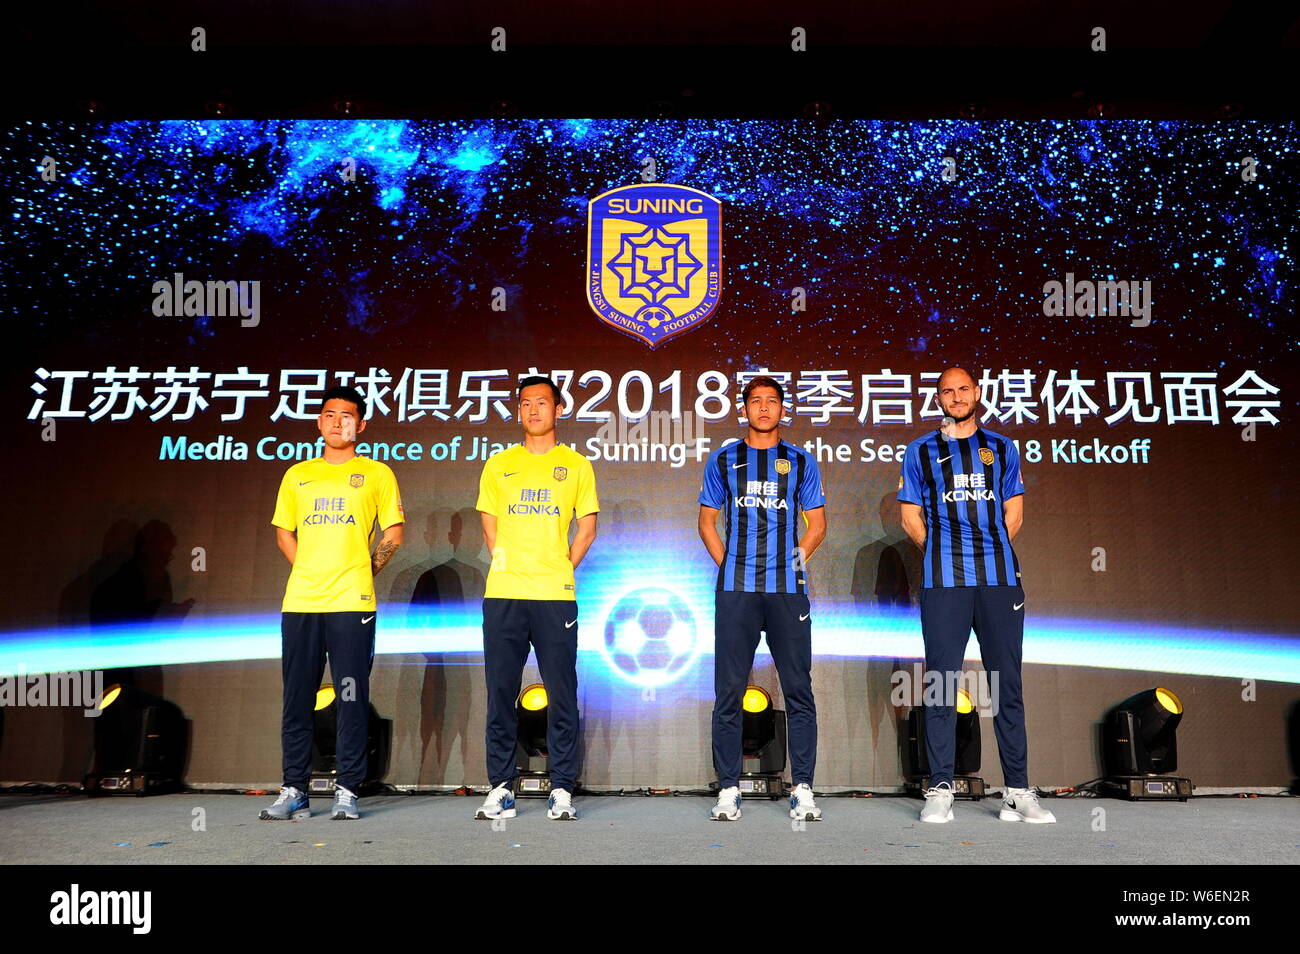 Un joueur de football italien Gabriel Alejandro, palette, à droite, est représenté à la conférence de presse de Jiangsu Suning C.F. pour le lancement de la saison 2018 dans la région de Nan Banque D'Images